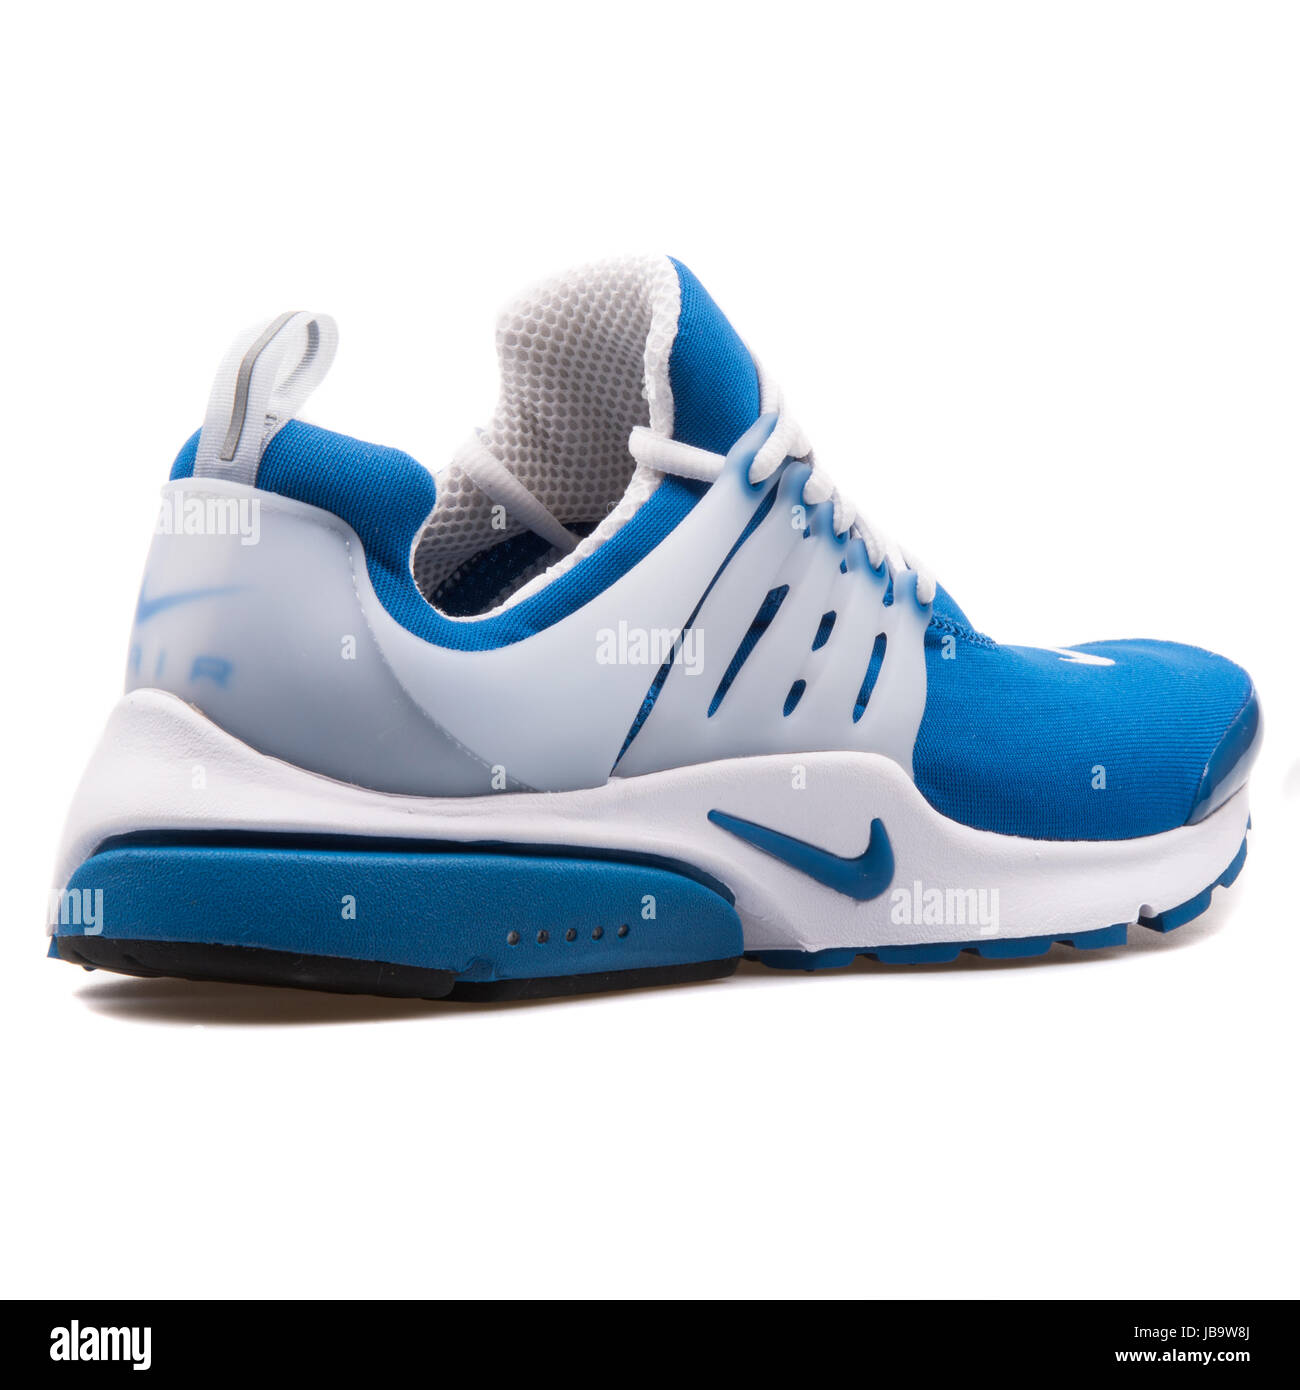 Nike Air Presto QS blaue und weiße Herren Laufschuhe - 789870-413  Stockfotografie - Alamy